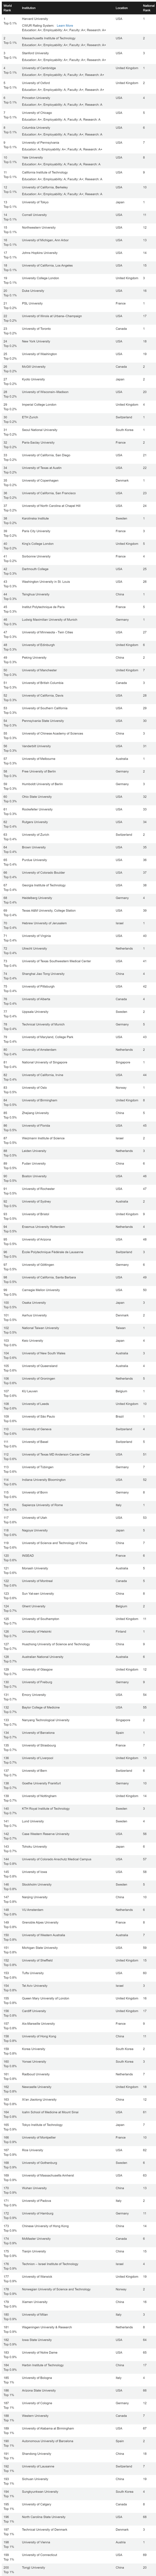 世界大学排名TOP200.jpg